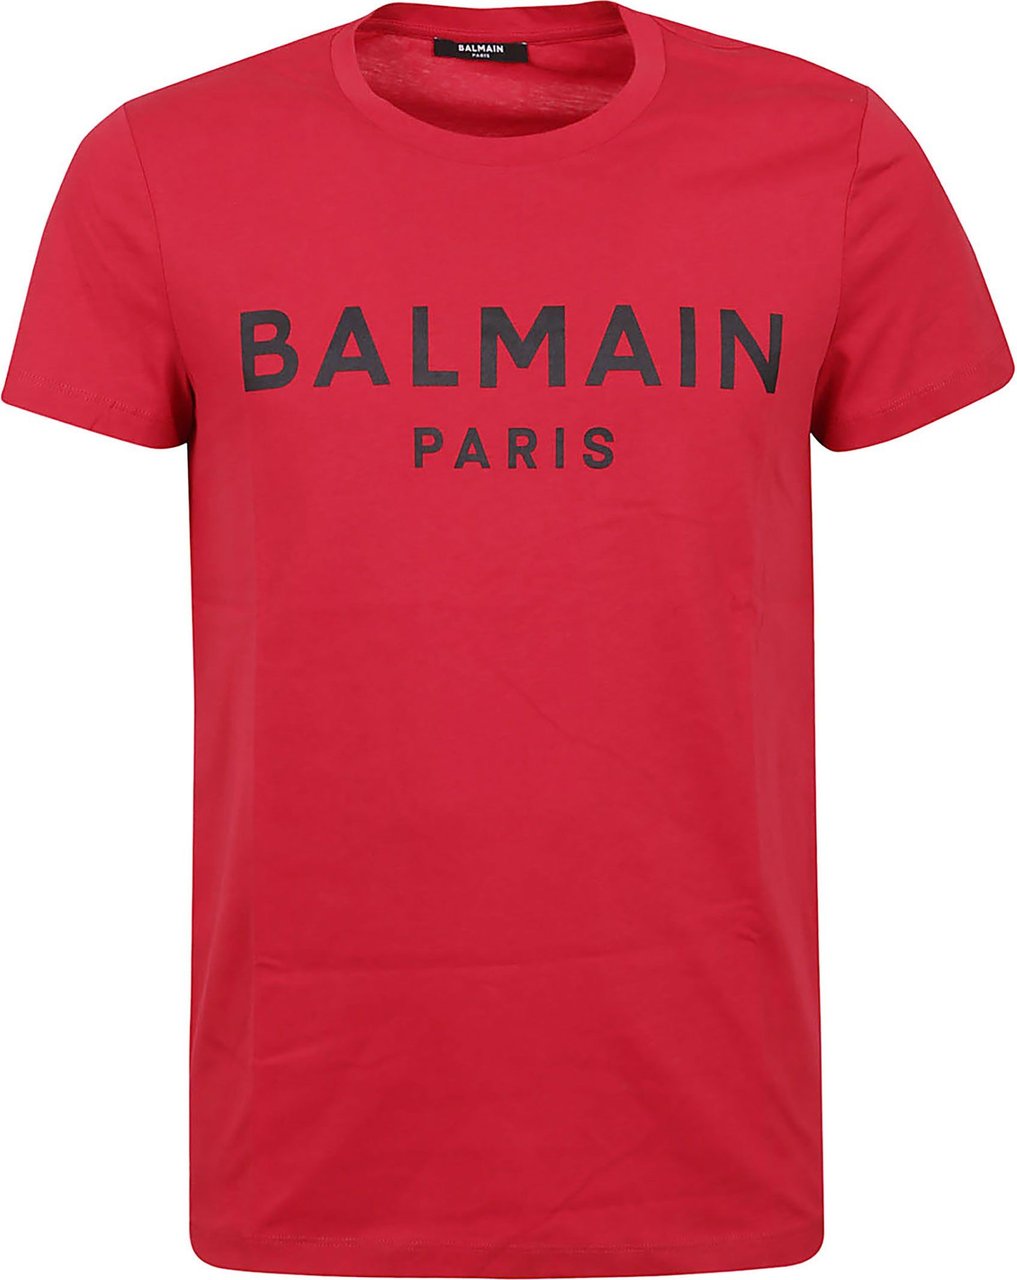 Balmain Printed T-Shirt - Classic Fit Divers